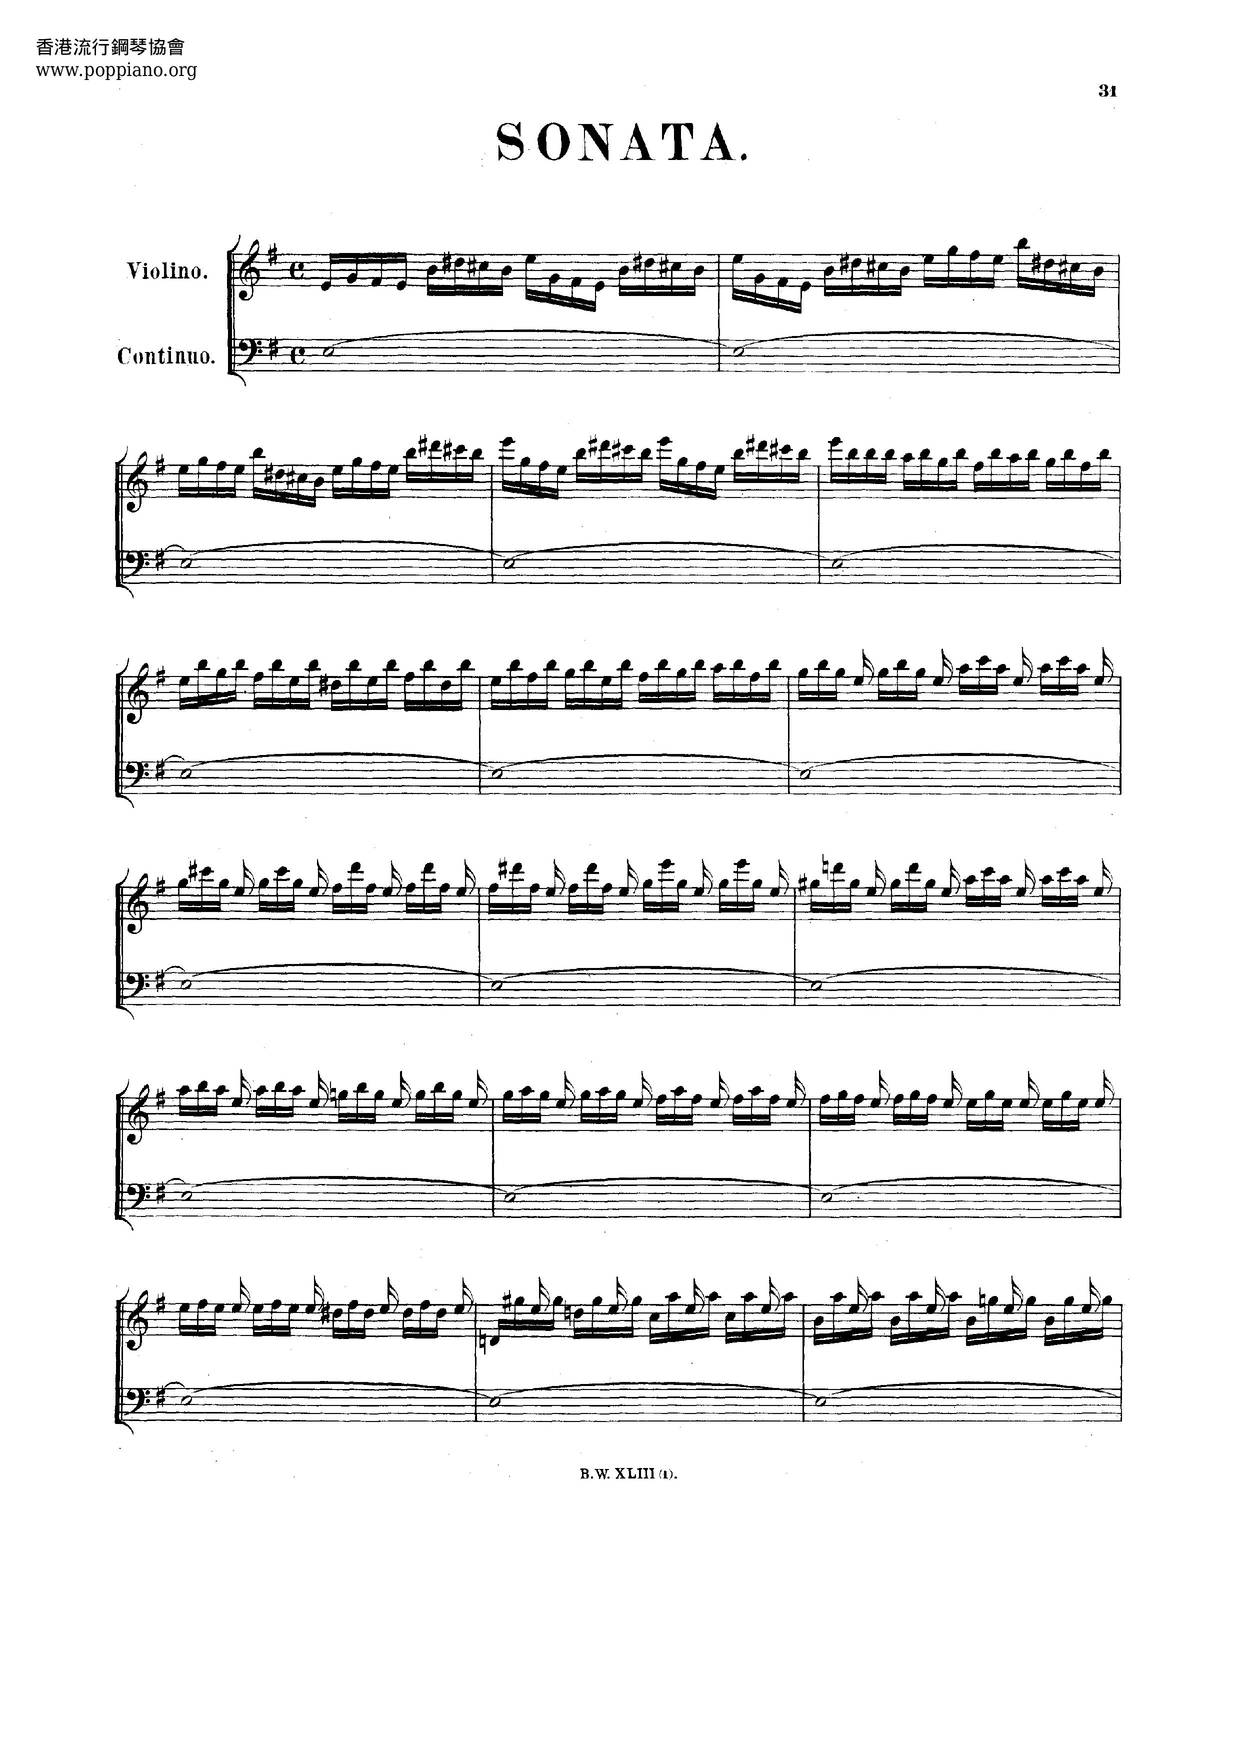 Violin Sonata In E Minor, BWV 1023 Score